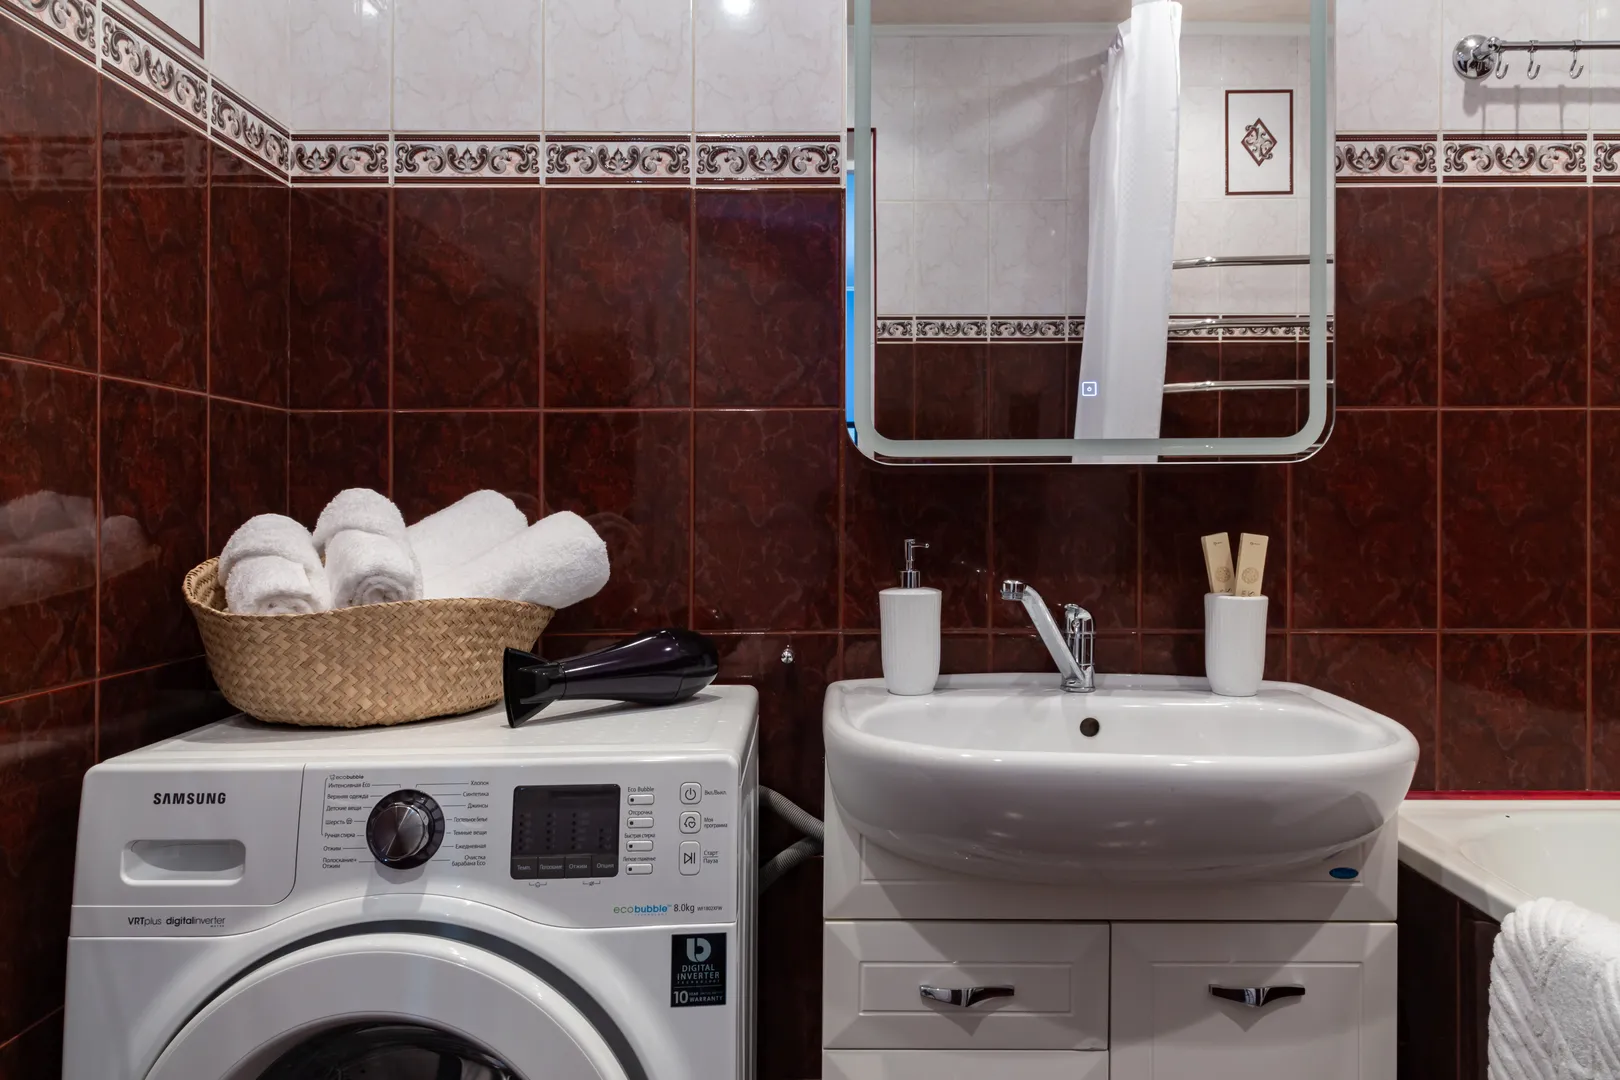 Ванная комната с белоснежными полотенцами, феном, стиральной машиной, косметическими средствами и водонагревателем